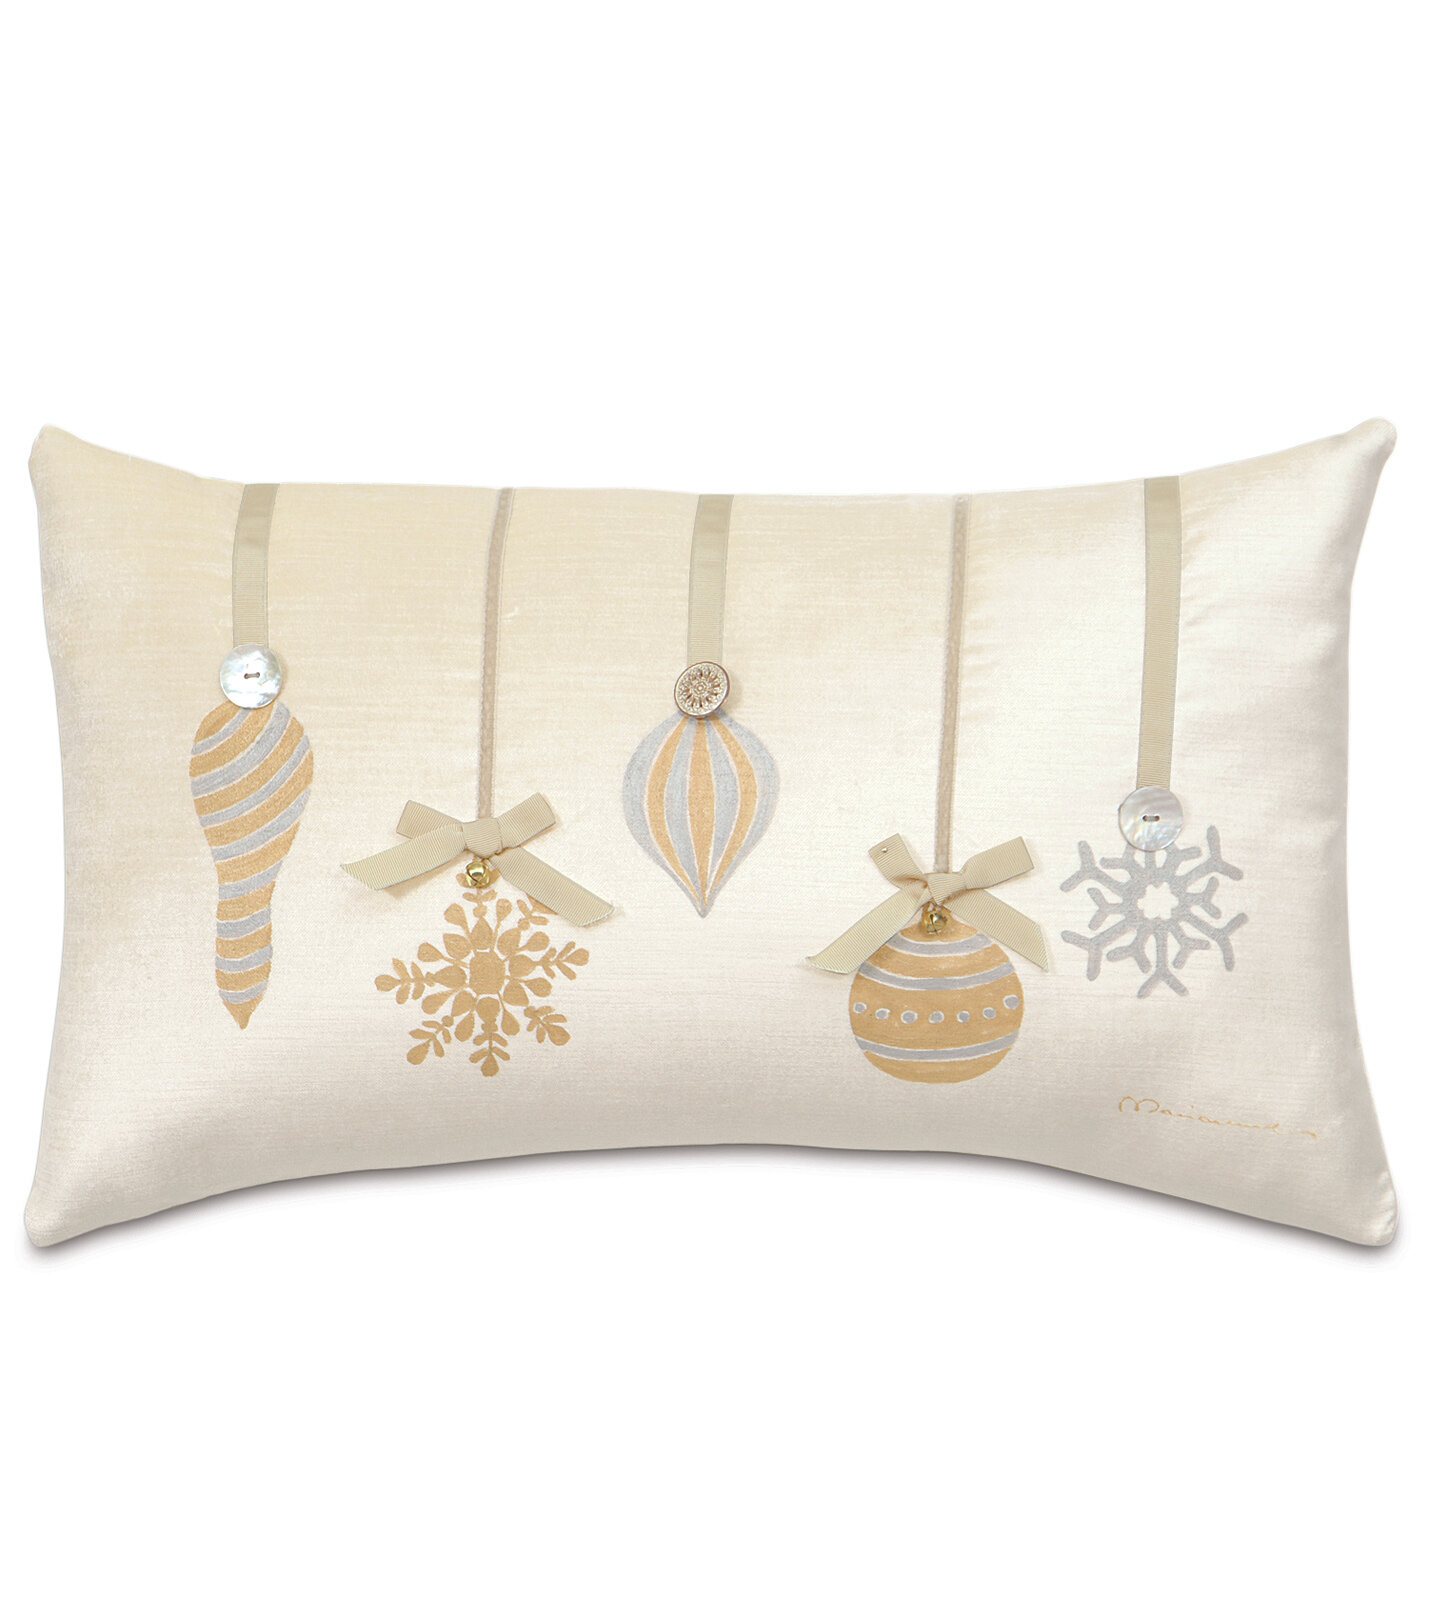 https://assets.wfcdn.com/im/25348342/compr-r85/6729/6729817/holiday-metallic-ornaments-lumbar-pillow-cover-insert.jpg